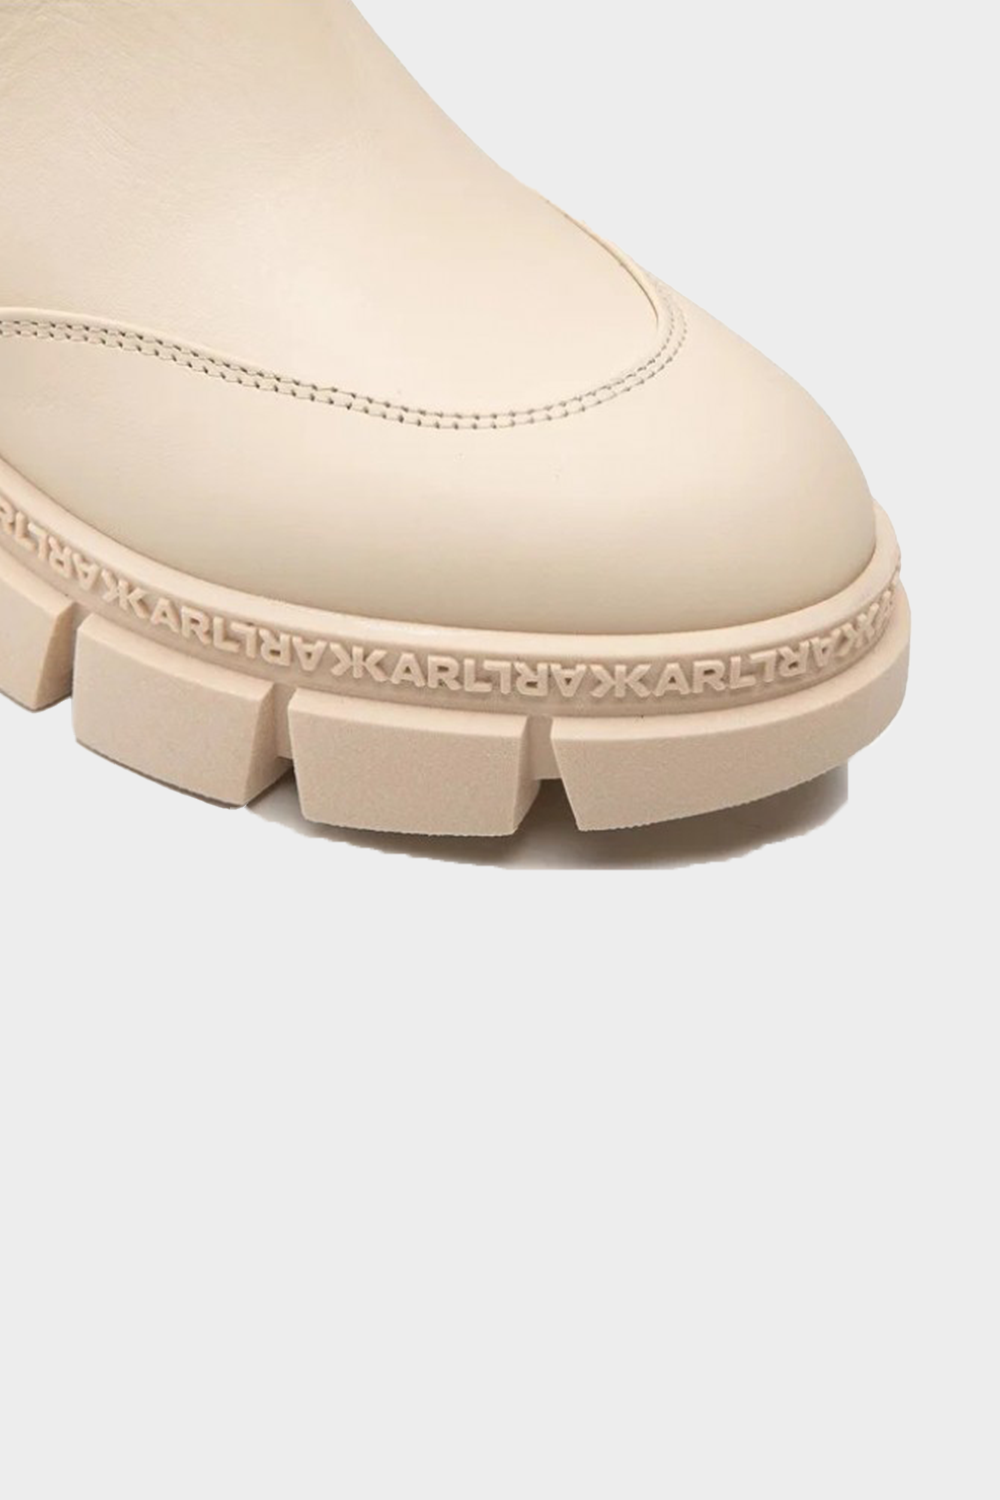 מגפיים לנשים עור בצבע בז' KARL LAGERFELD Vendome online | ונדום .